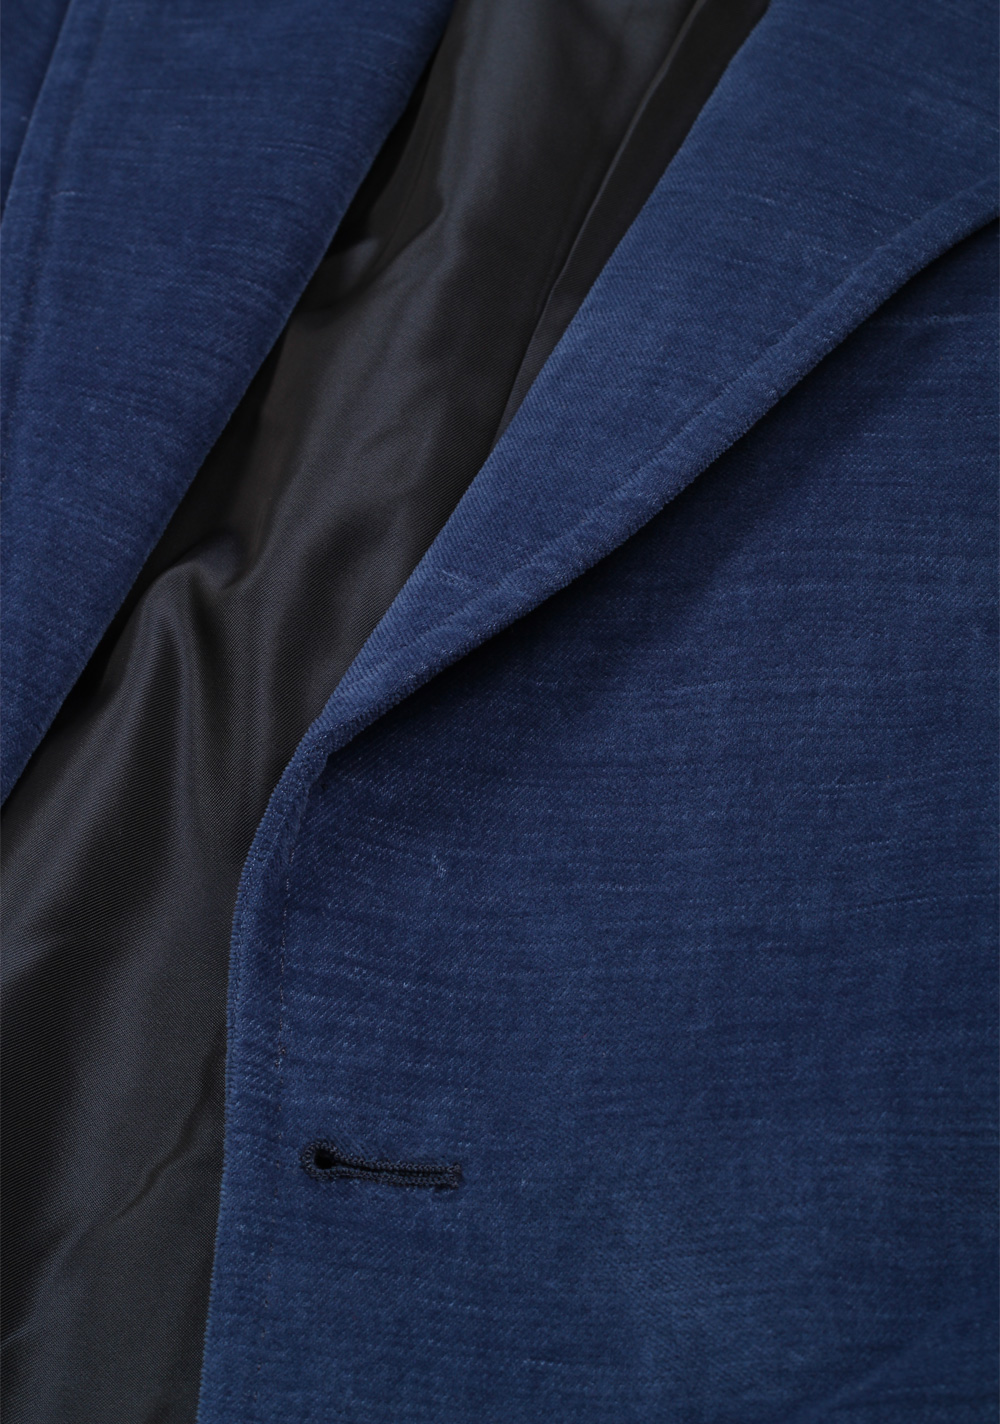 TOM FORD Shelton Blue Velvet Suit Size 48 / 38R U.S. In Cotton Linen | Costume Limité